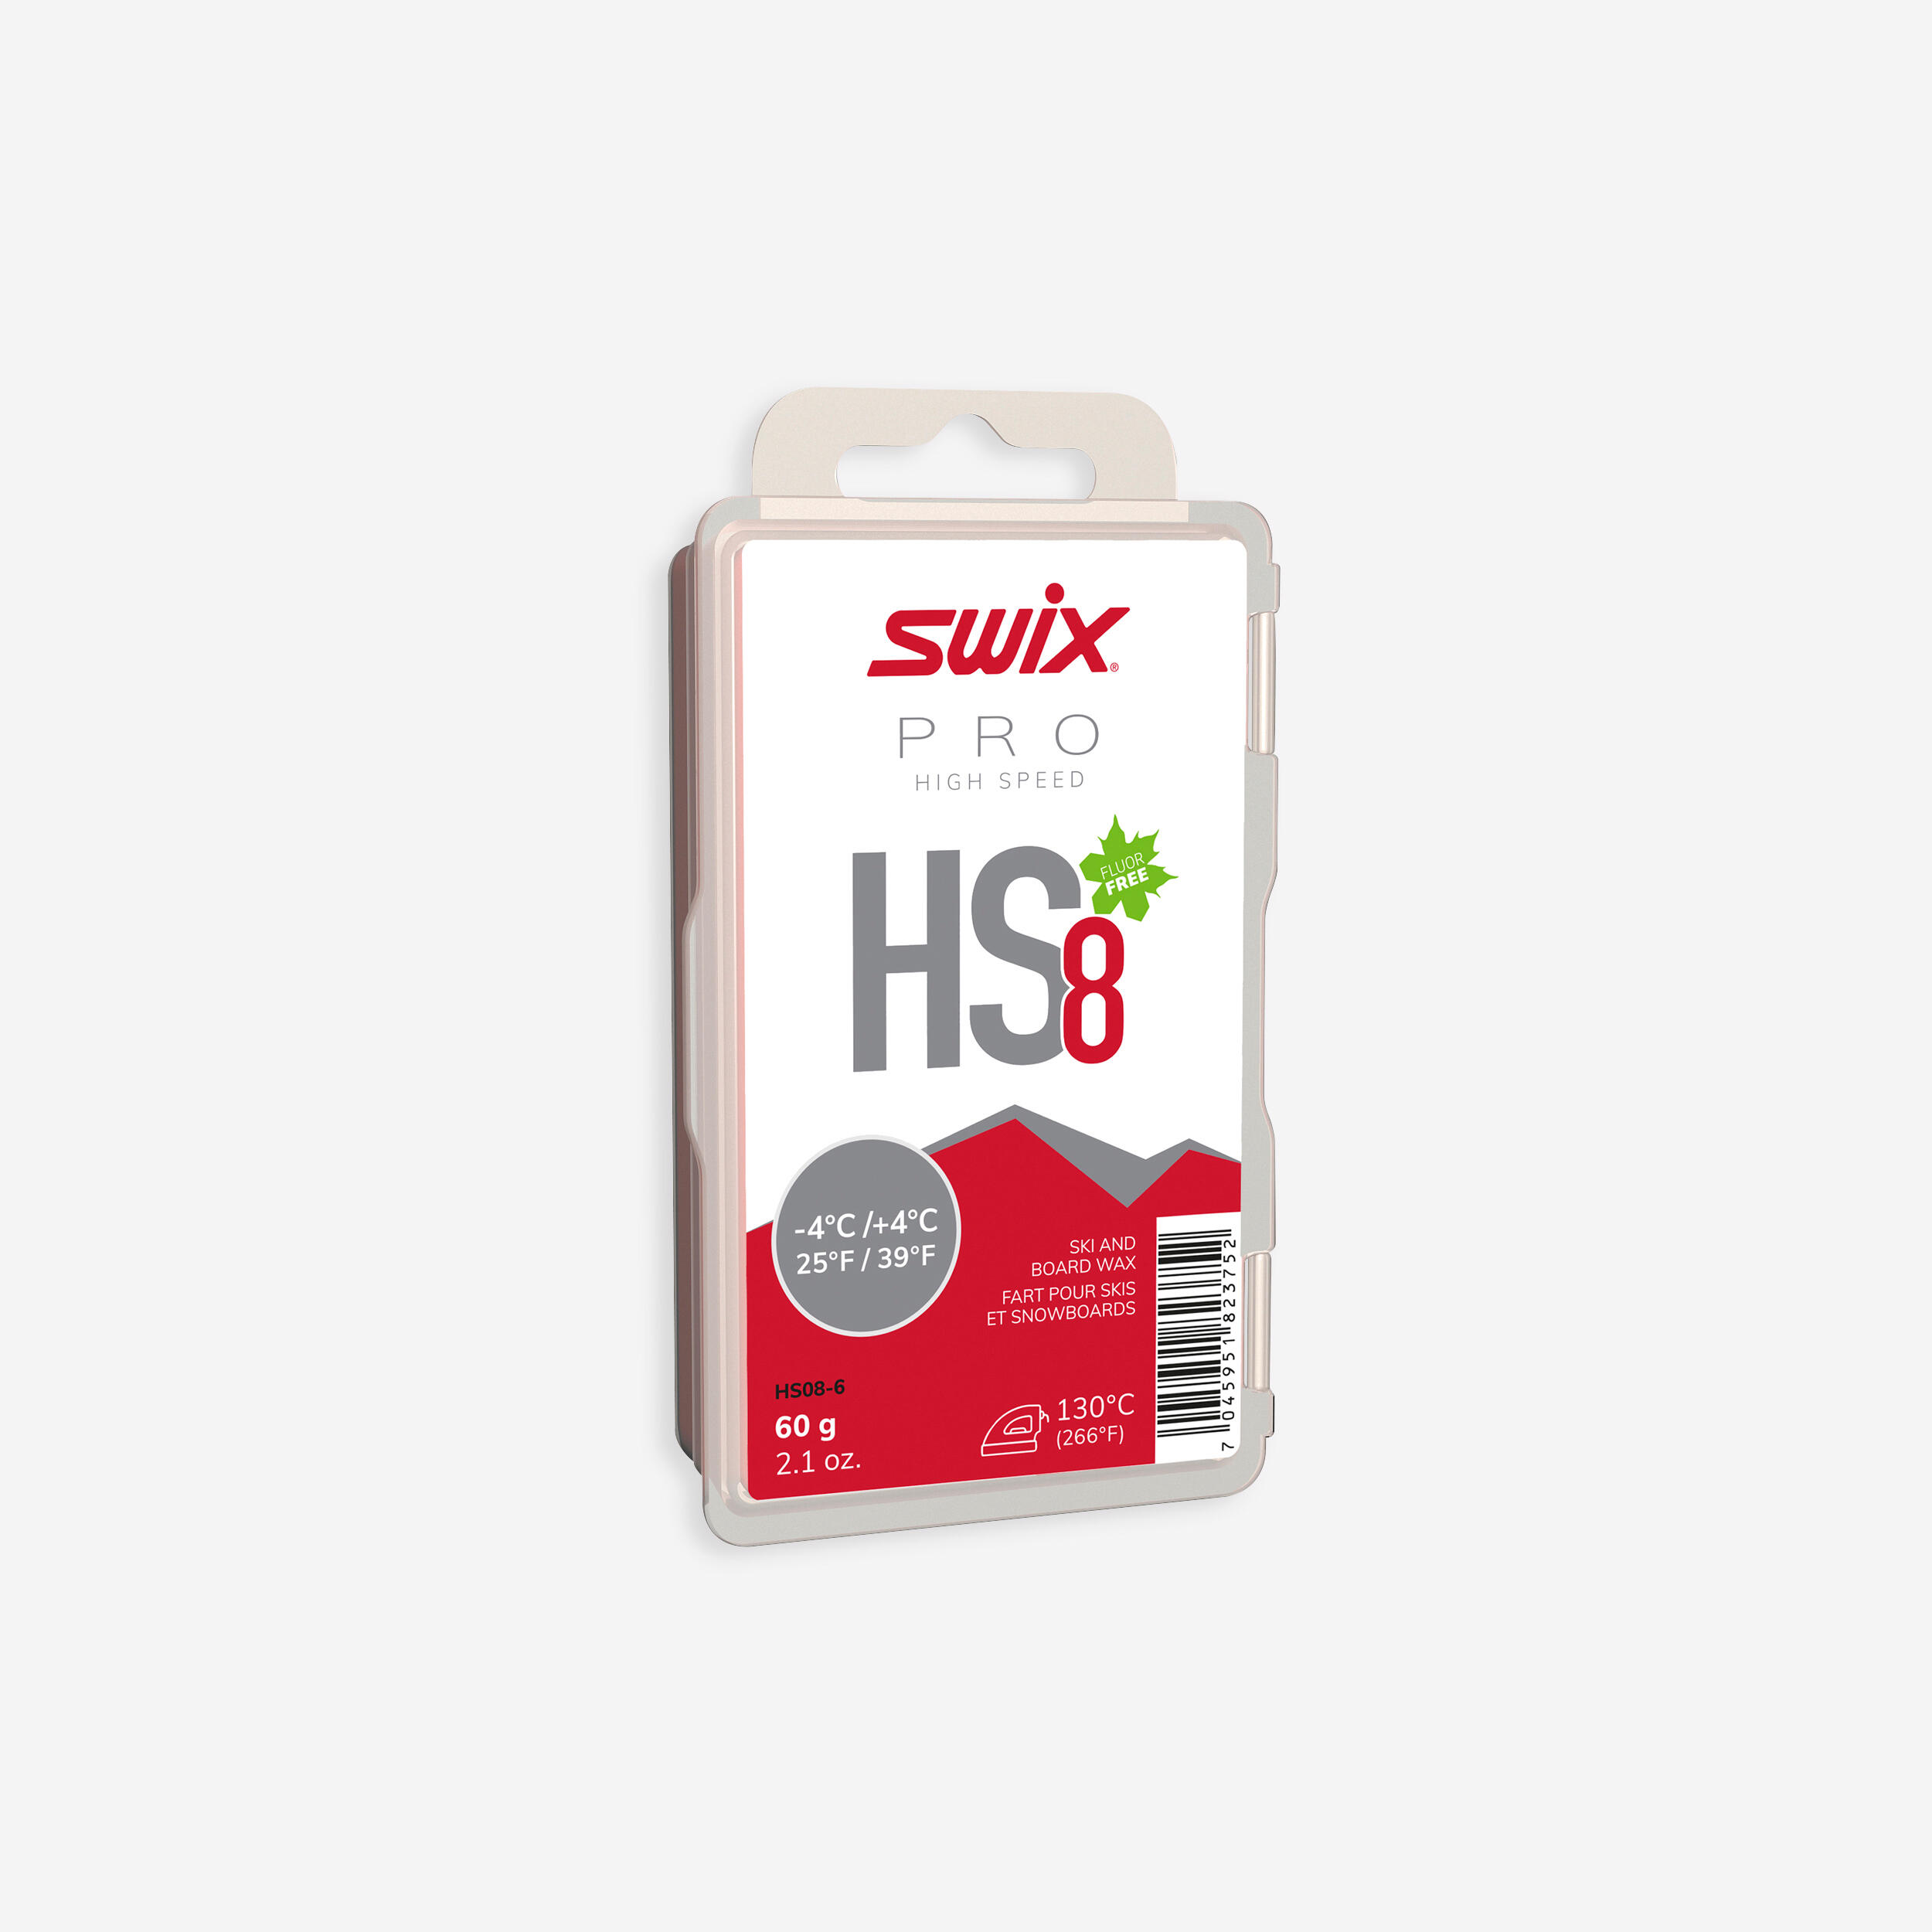 SWIX Warm wax - HS8 -4°C/+4°C - 60g - Red